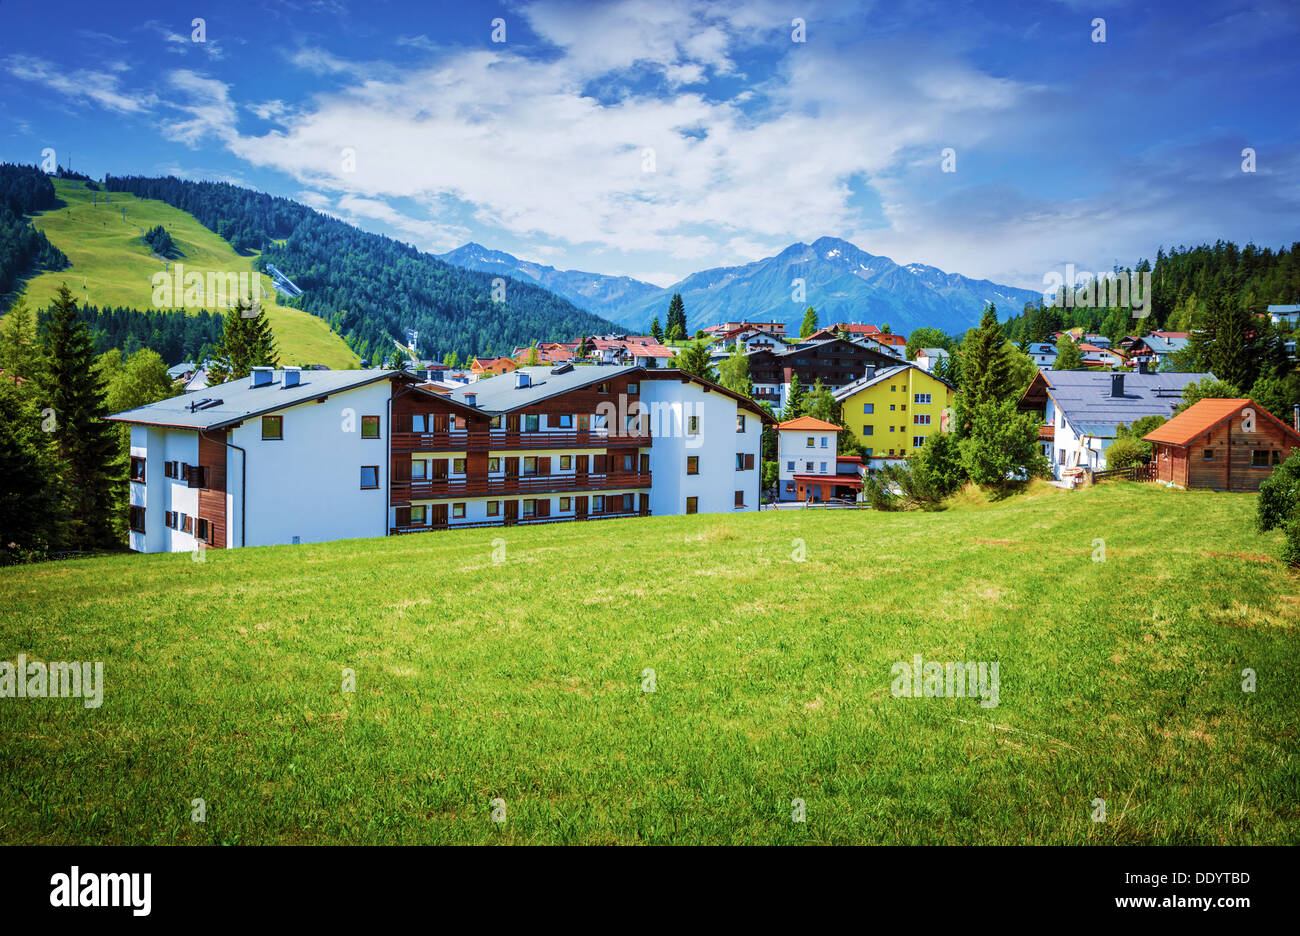 Dorf in den Bergen, Europa, Österreich, Seefeld, Alpen, Luxus-Ski-Resort, schöne Häuser, malerische Landschaft Stockfoto